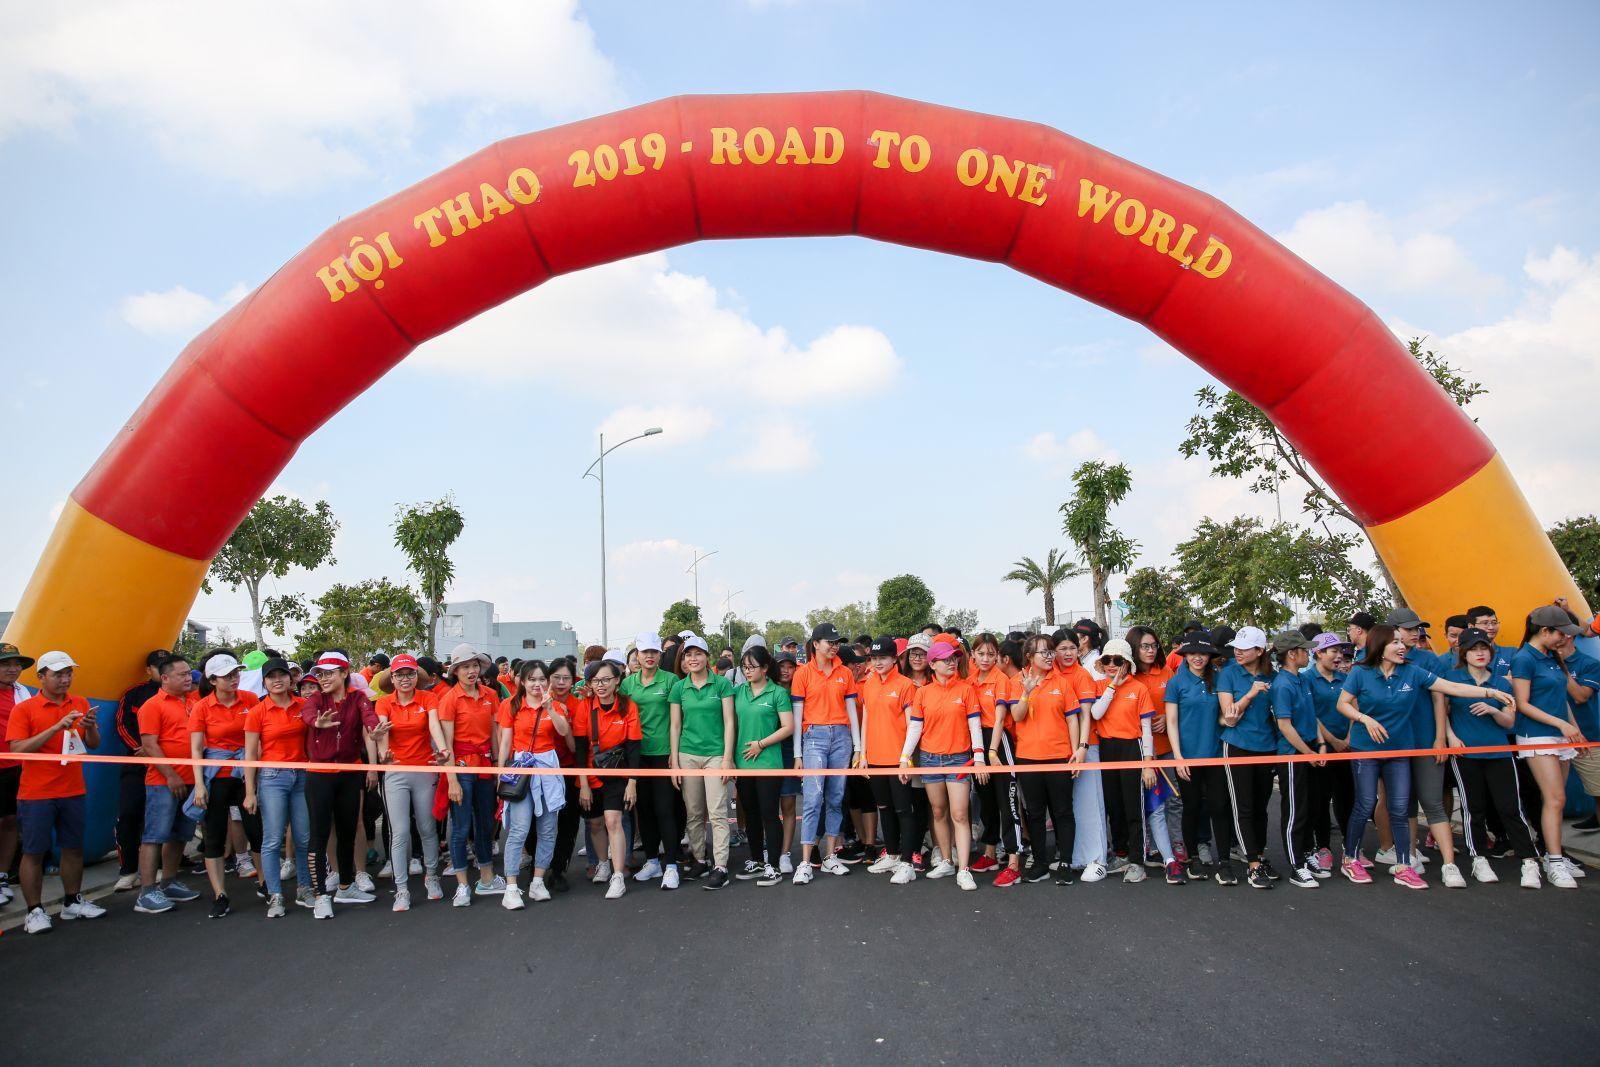 ĐẤT XANH ĐÀ NẴNG CHÁY HẾT MÌNH CÙNG ROAD TO ONE WORLD - Viet Nam Smart City